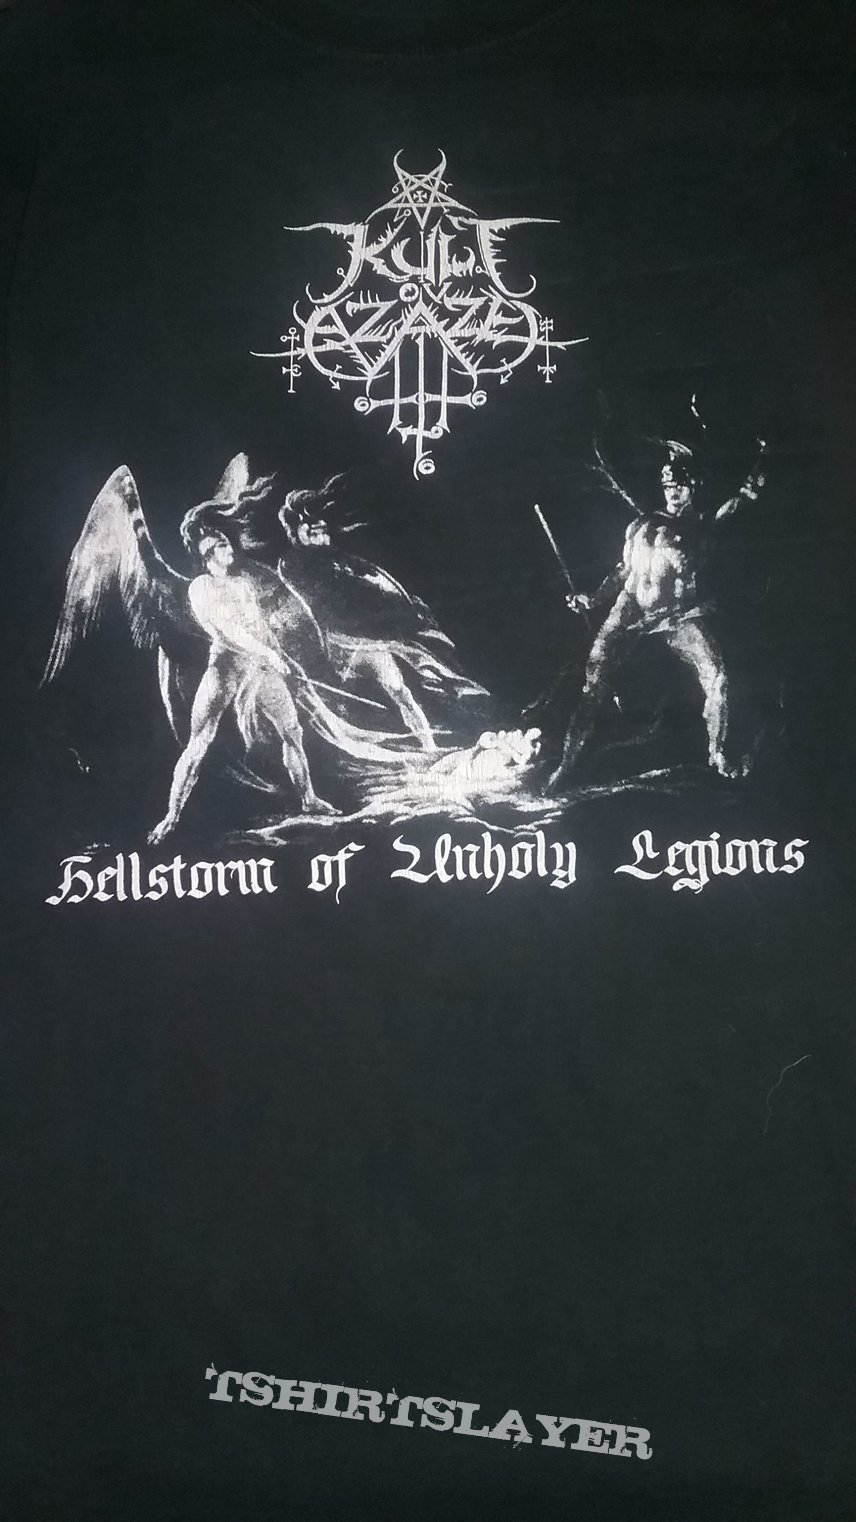 Kult Ov Azazel - Hellstorm of Unholy Legions 2005 East Coast Tour